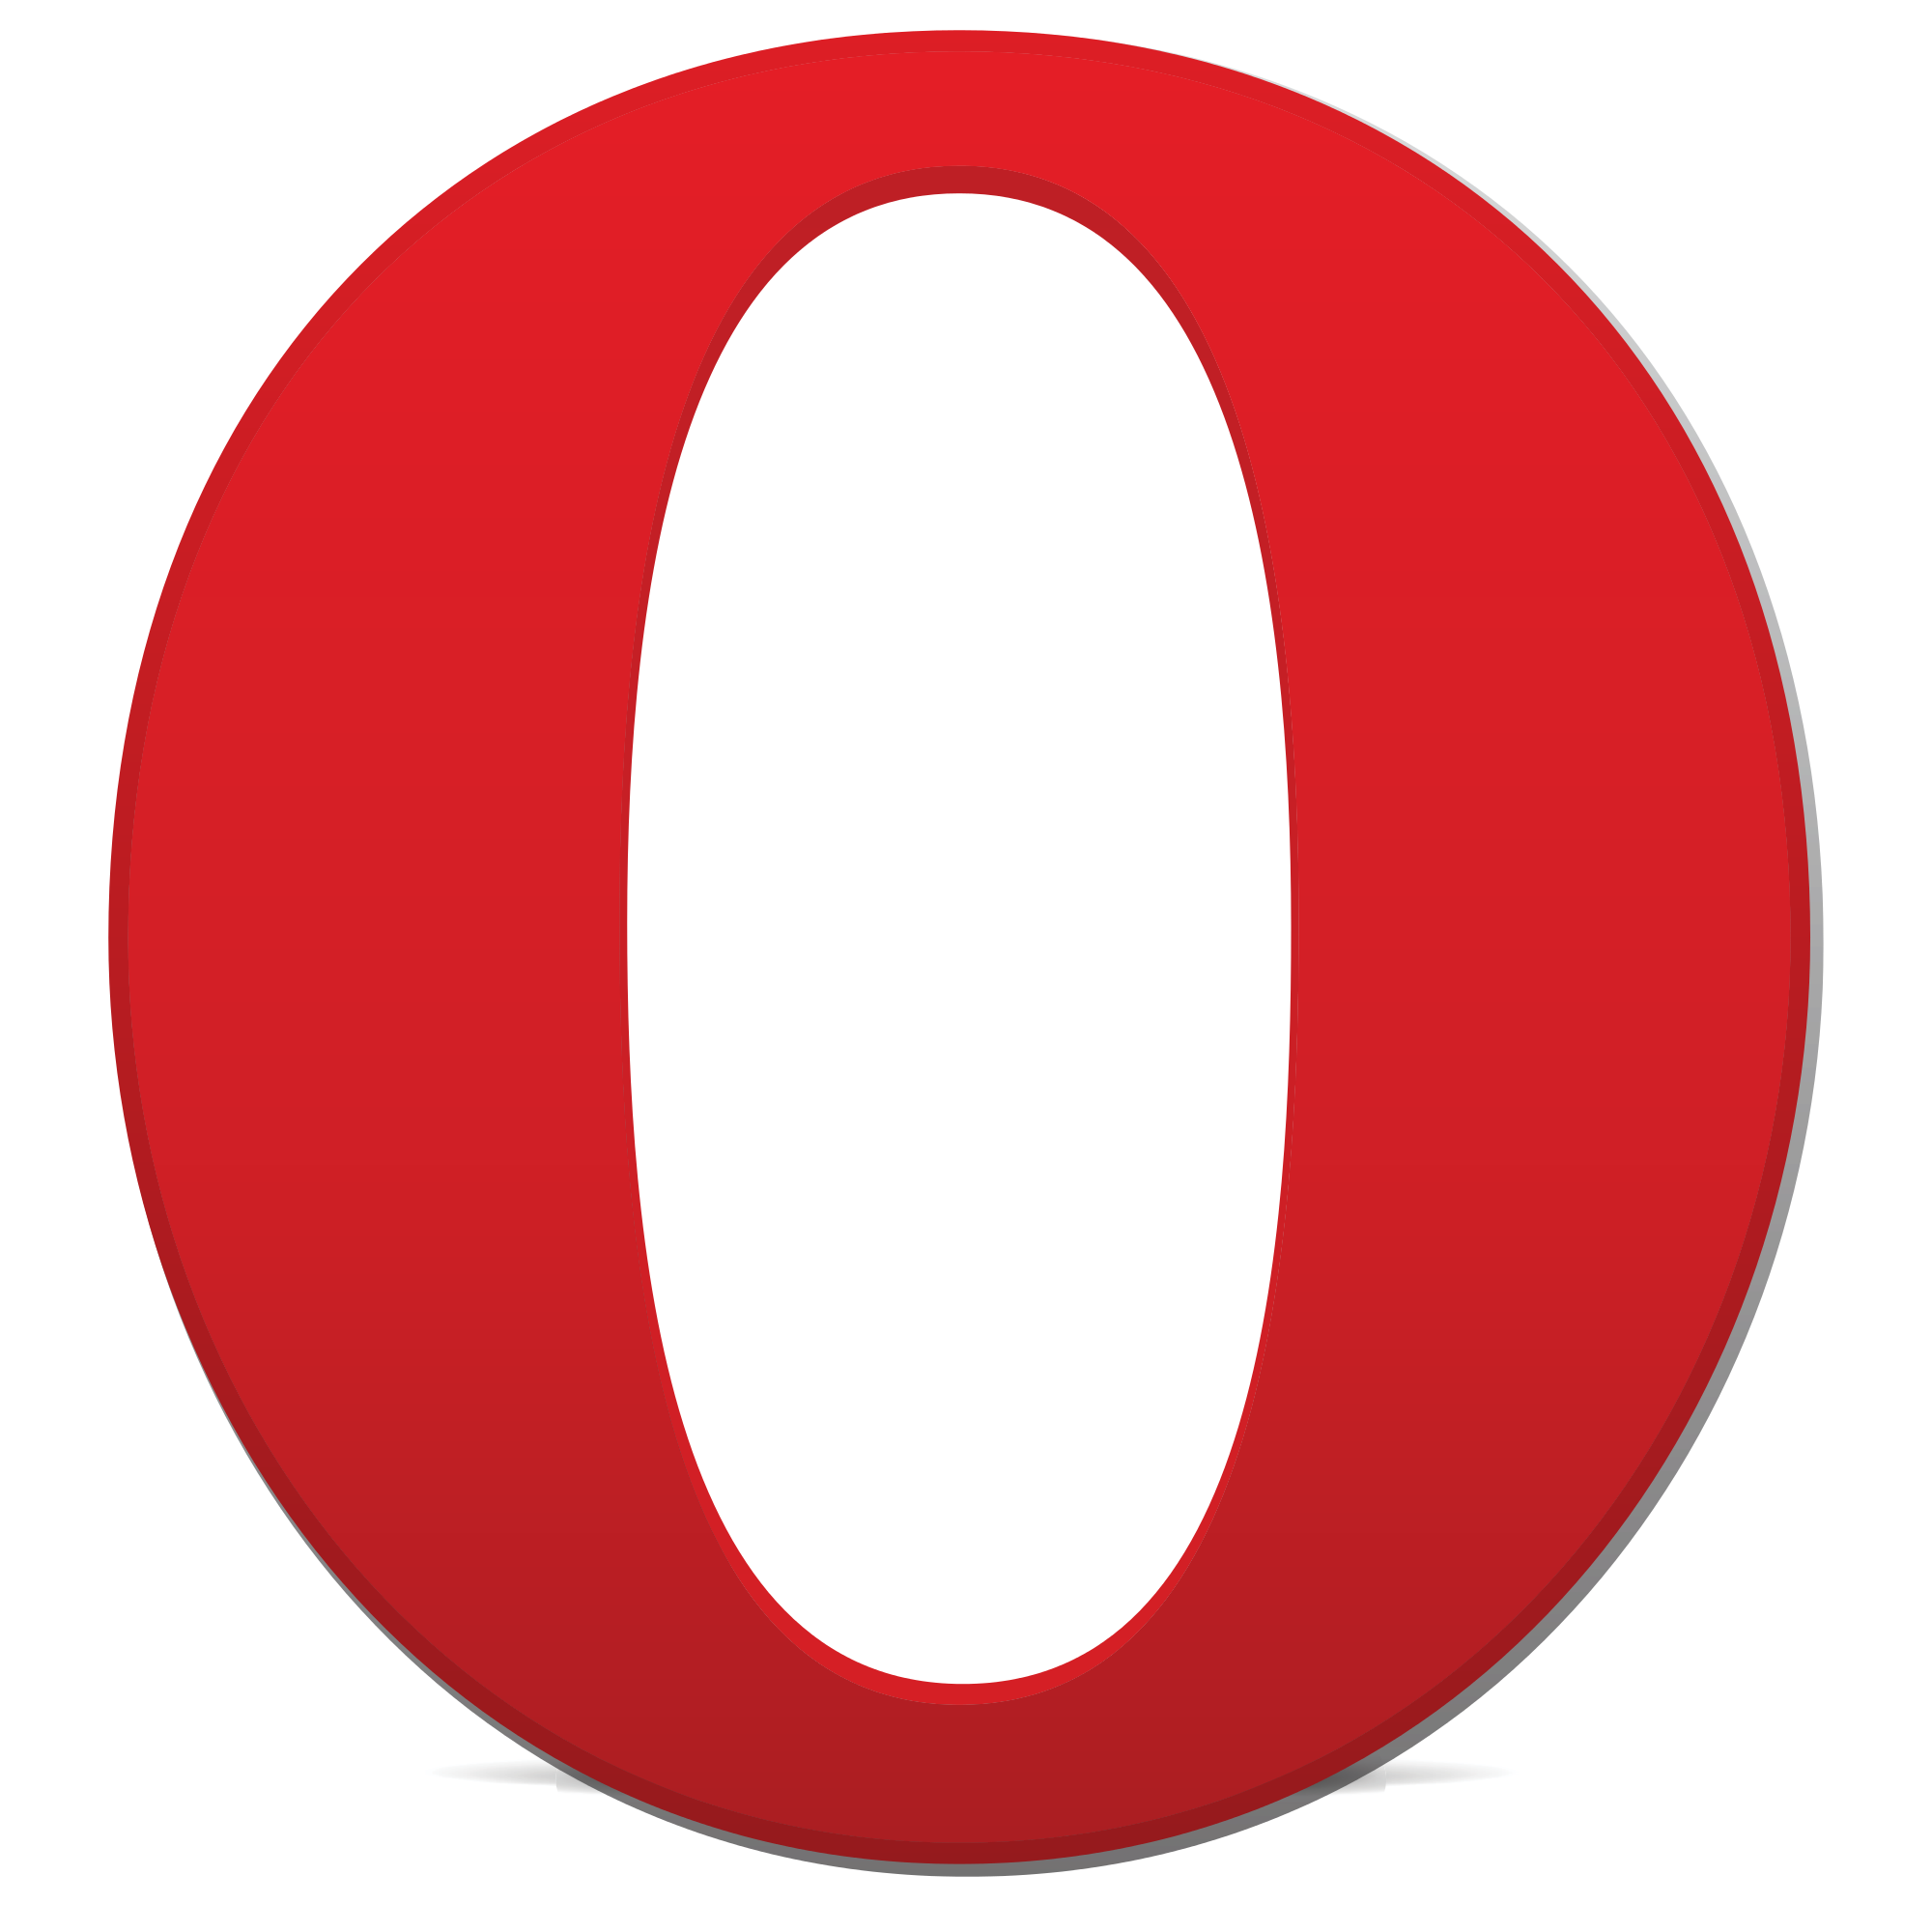 Opera logos